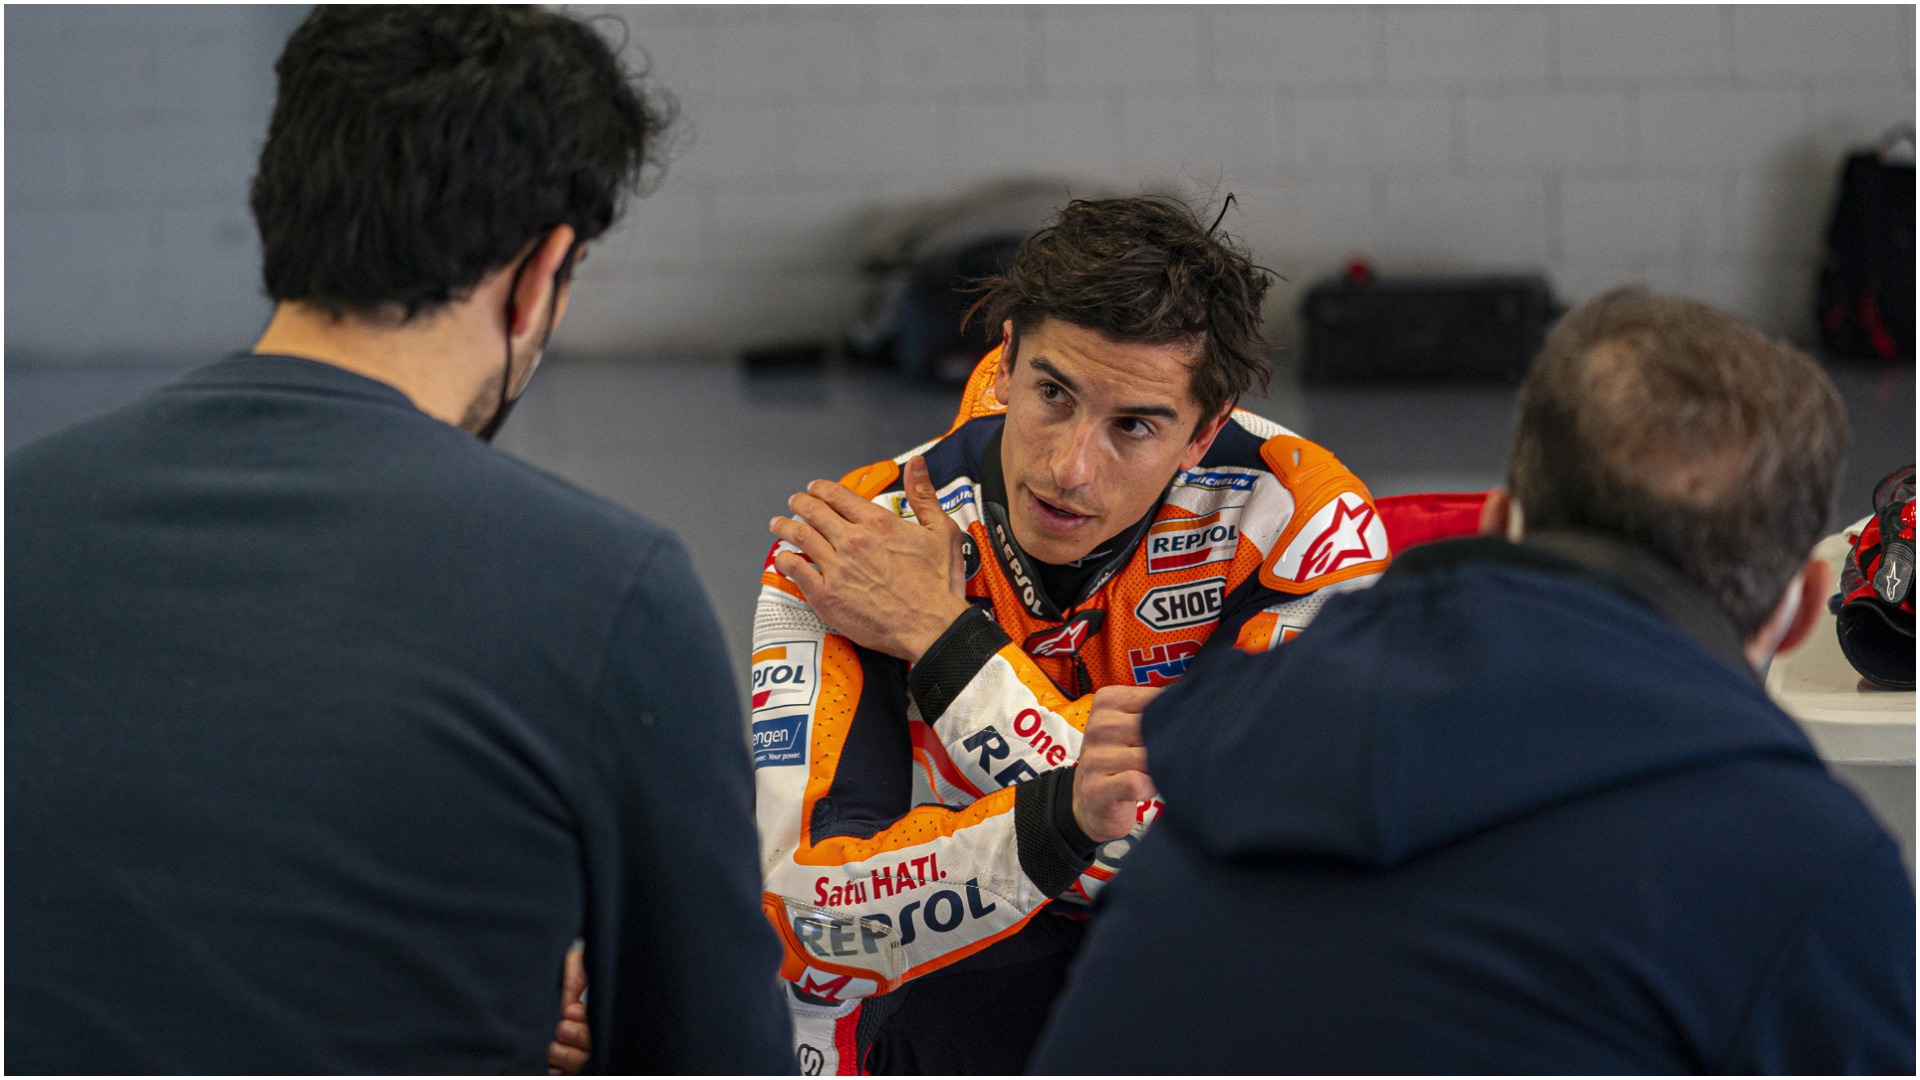 “Nuk jam ende në gjendje”, Marquez heq dorë nga gara e parë e Moto GP